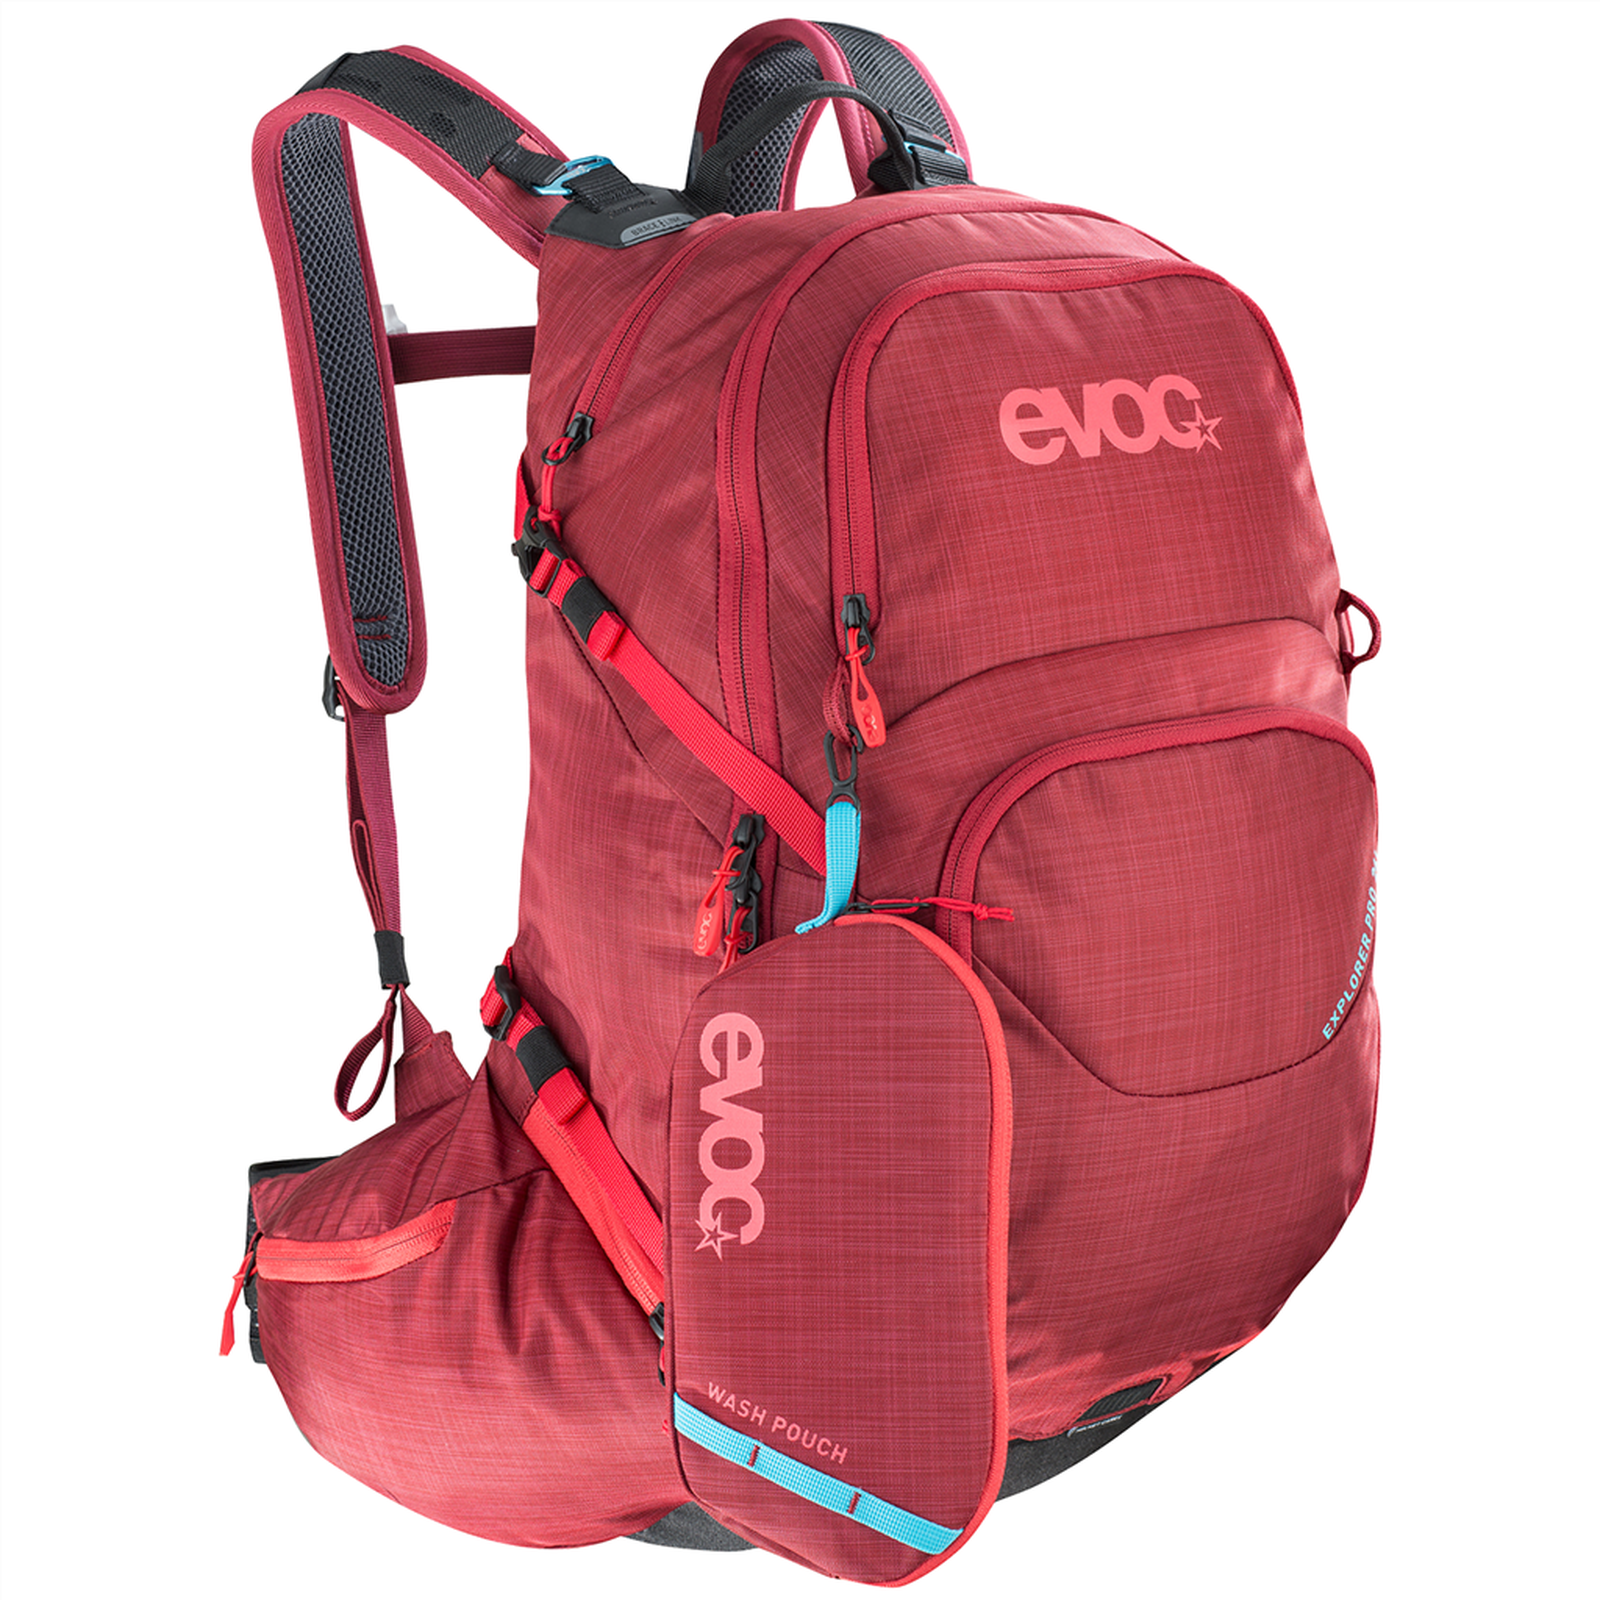 Explorer Pro 26L Backpack